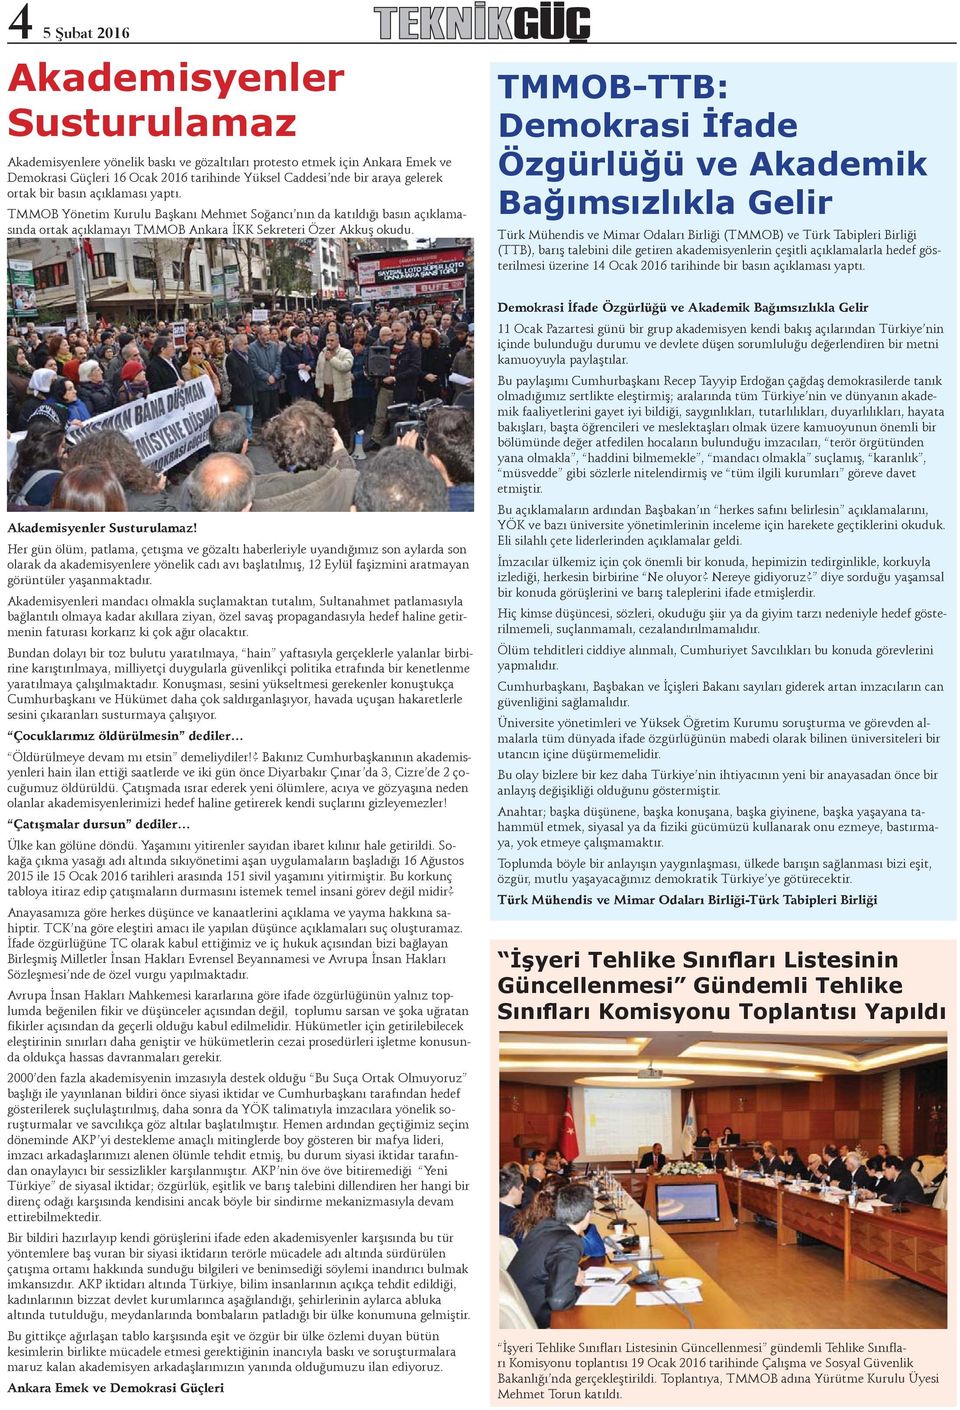 TMMOB-TTB: Demokrasi İfade Özgürlüğü ve Akademik Bağımsızlıkla Gelir Türk Mühendis ve Mimar Odaları Birliği (TMMOB) ve Türk Tabipleri Birliği (TTB), barış talebini dile getiren akademisyenlerin